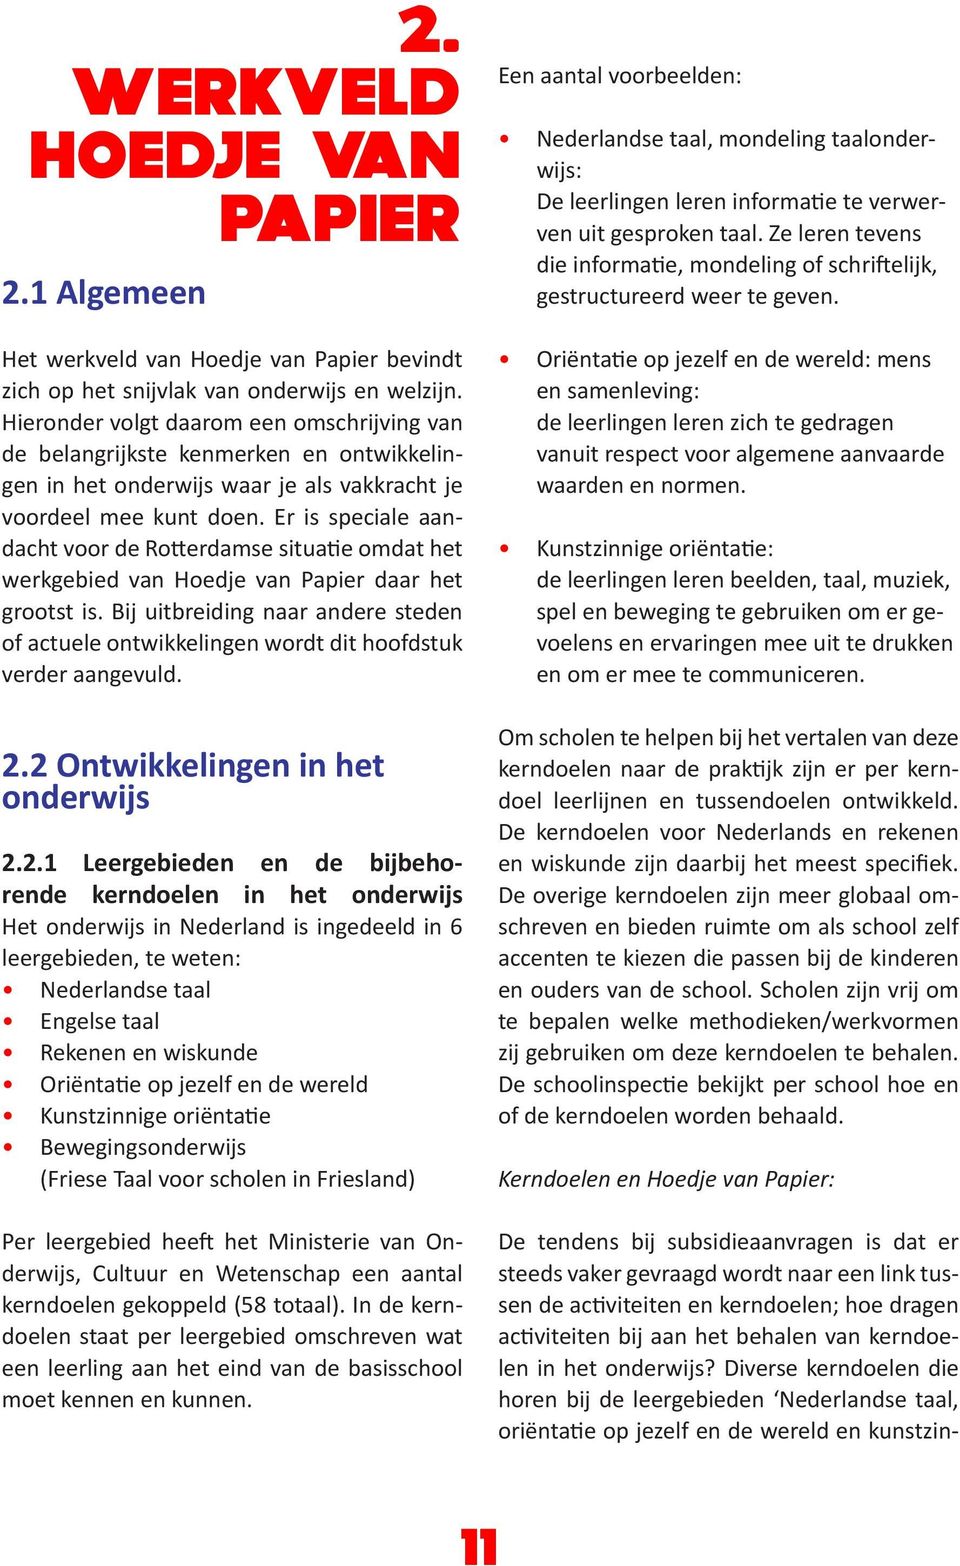 Er is speciale aandacht voor de Rotterdamse situatie omdat het werkgebied van Hoedje van Papier daar het grootst is.